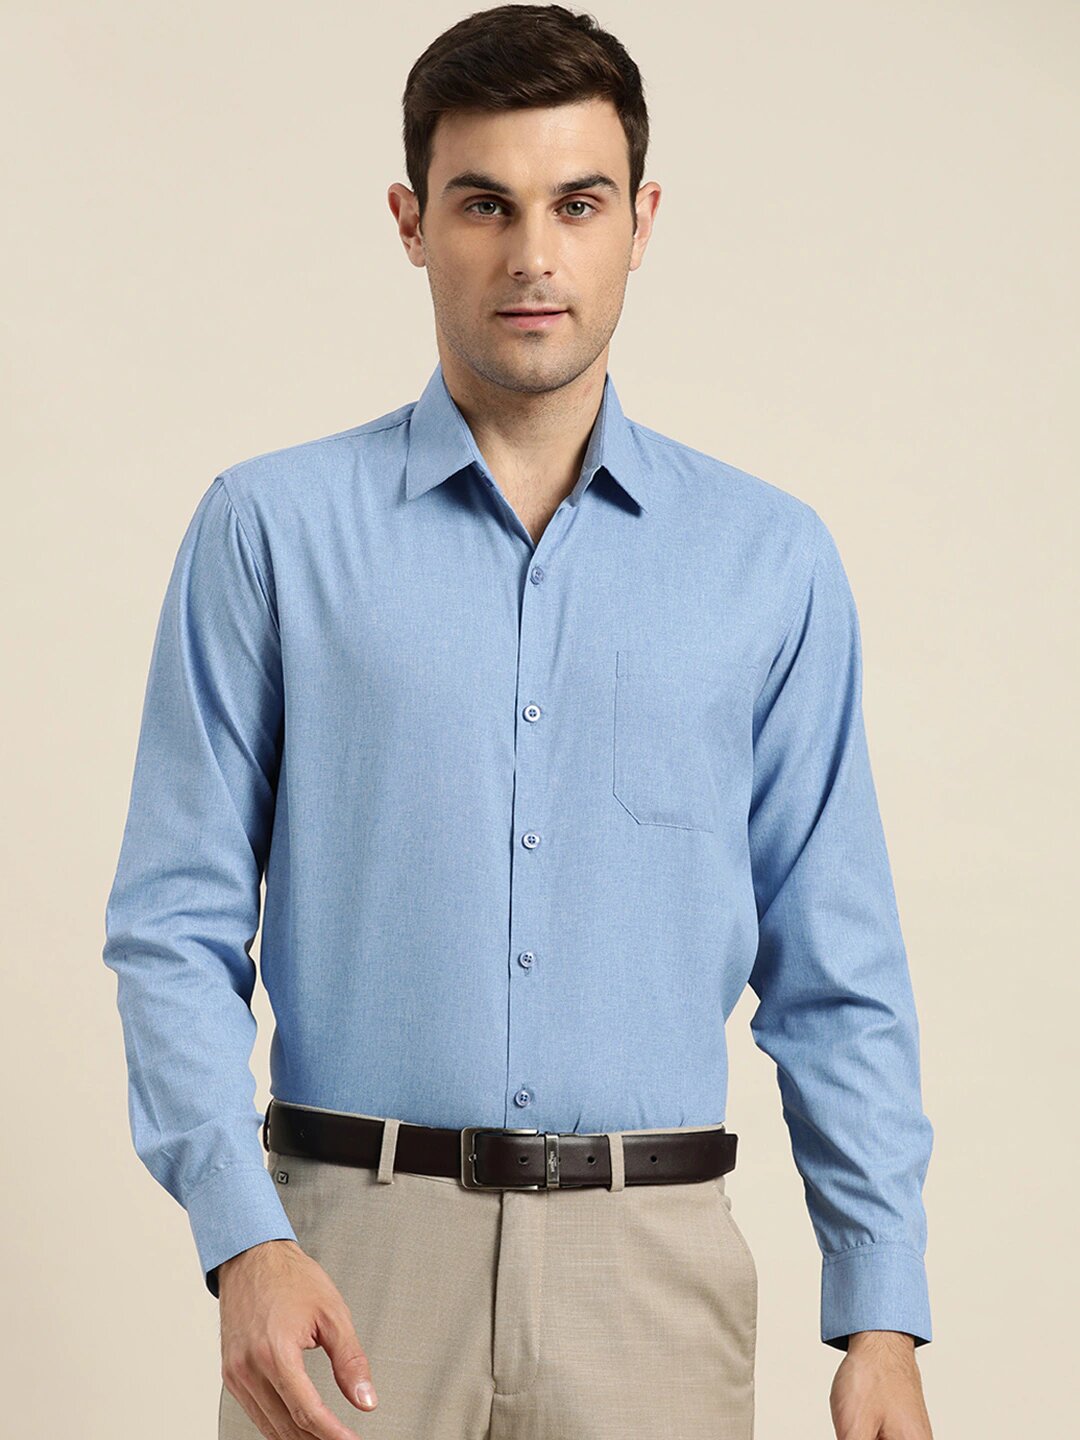 Men's Cotton Blue Casual Shirt